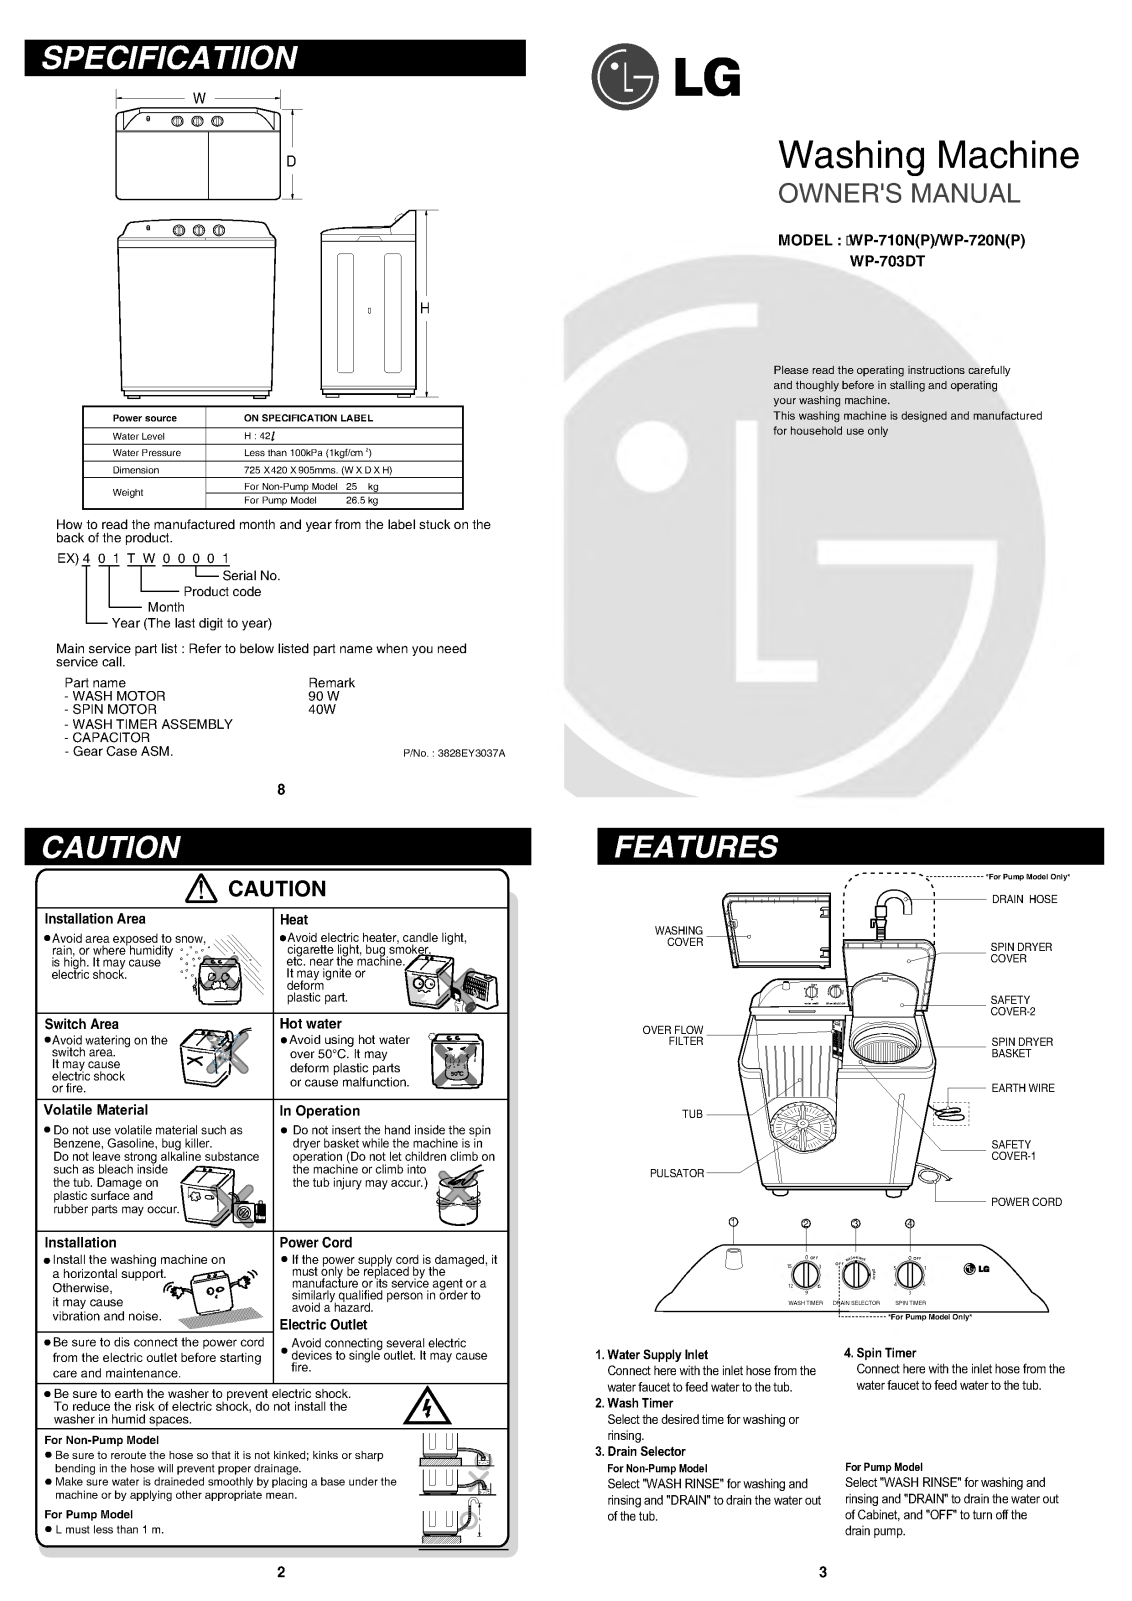 LG WP-710NP, WP-720NP, WP-710N, EW 43 Manual